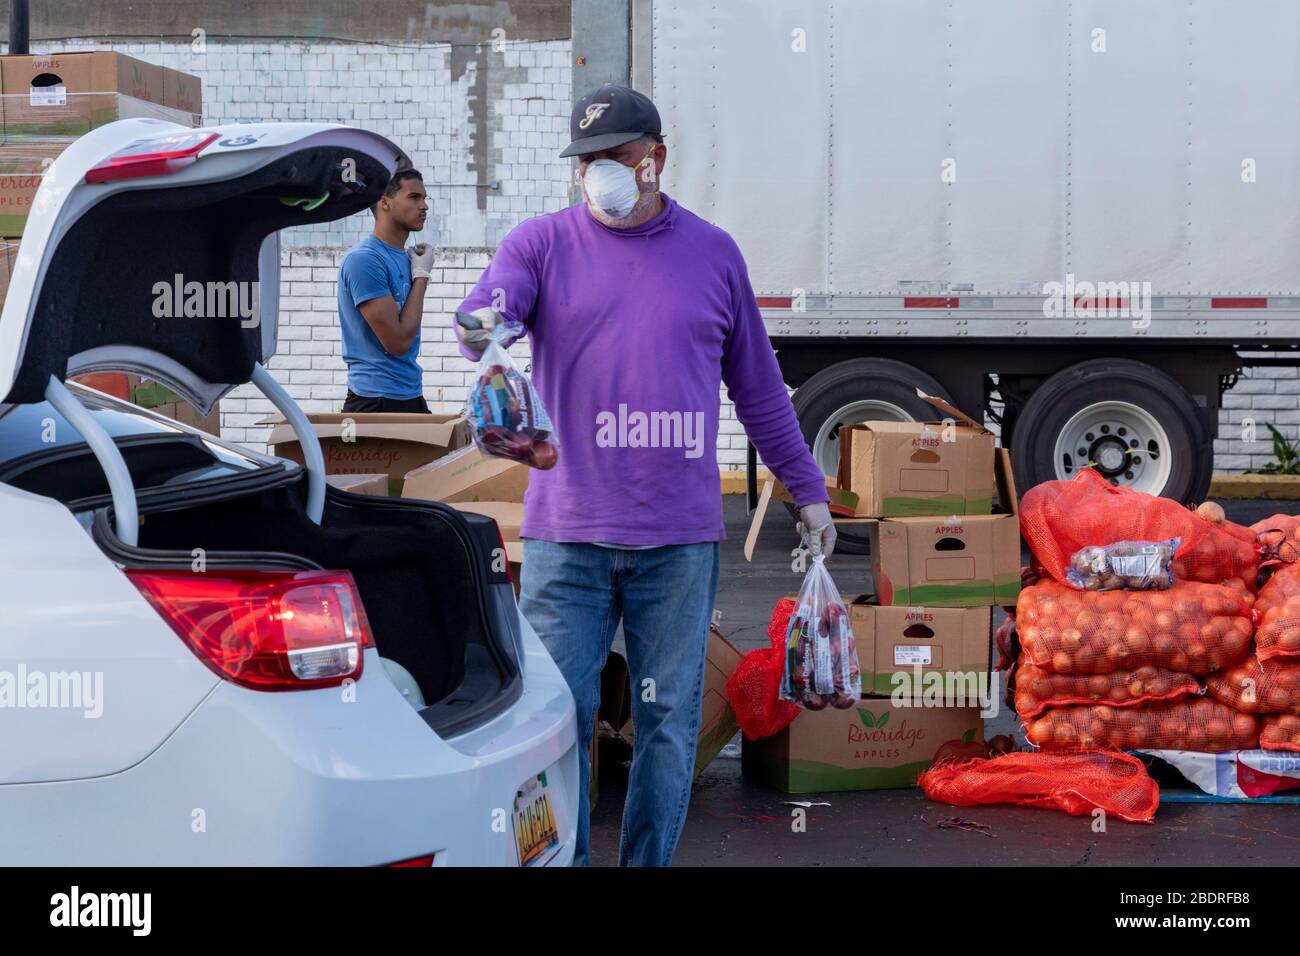 Detroit, Michigan, États-Unis. 8 avril 2020. Pendant la crise du coronavirus, la banque alimentaire communautaire Gleaners distribue des aliments gratuits aux résidents dans le besoin du sud-ouest de Detroit. Crédit: Jim West/Alay Live News Banque D'Images